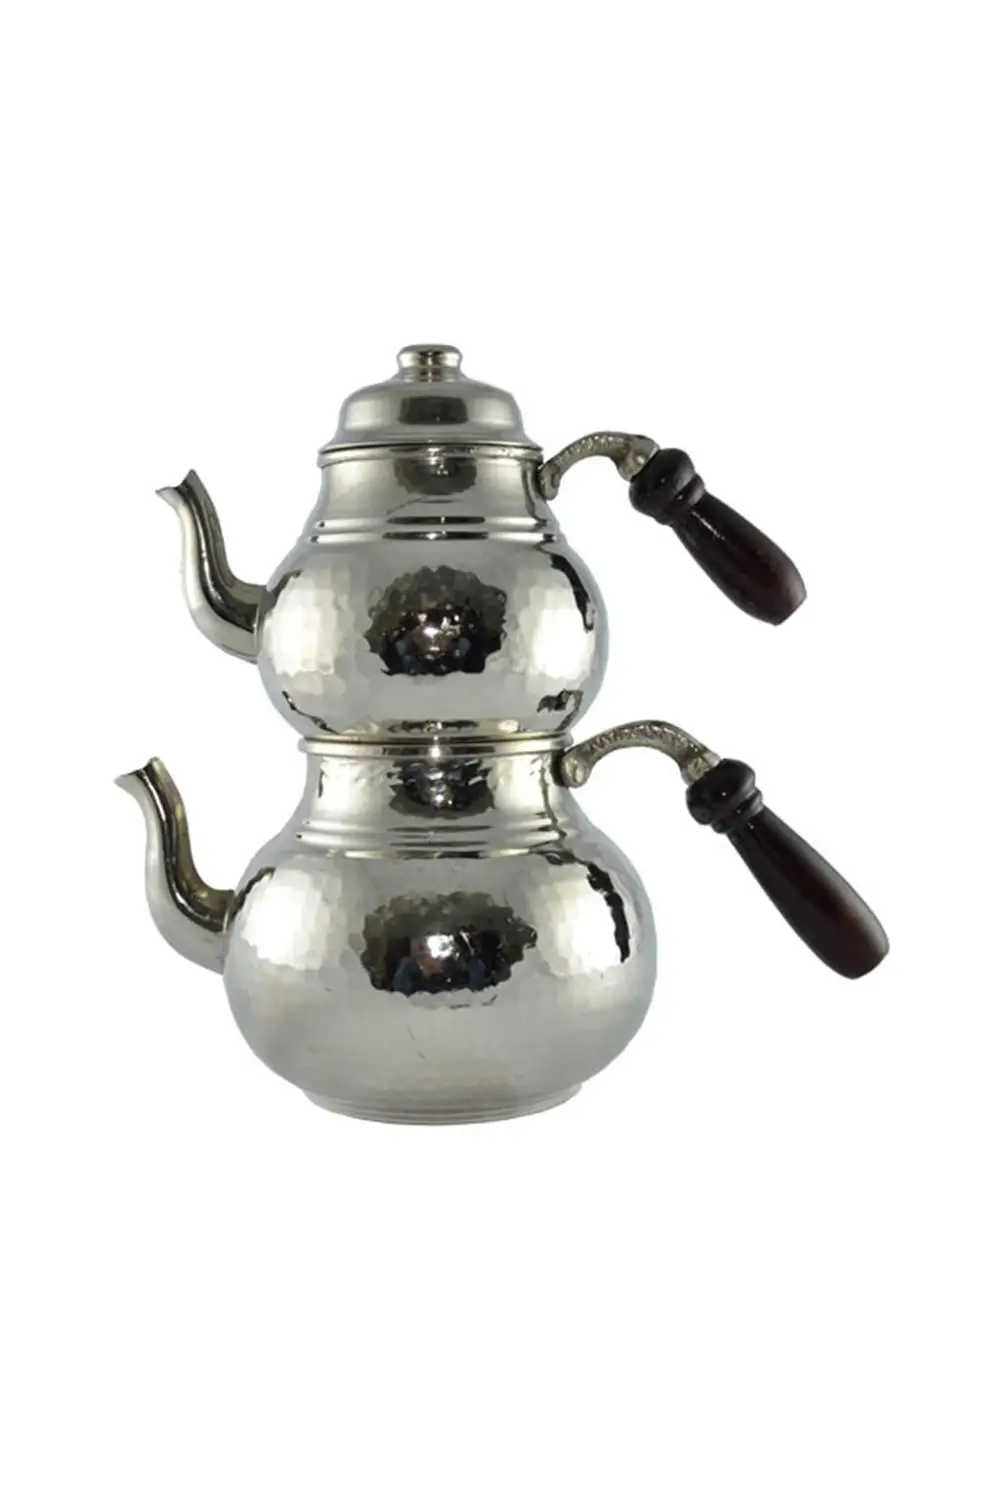 Турецкий чайник | медный чайник | набор чайников ручной работы | Традиционный турецкий чайник | чайный набор